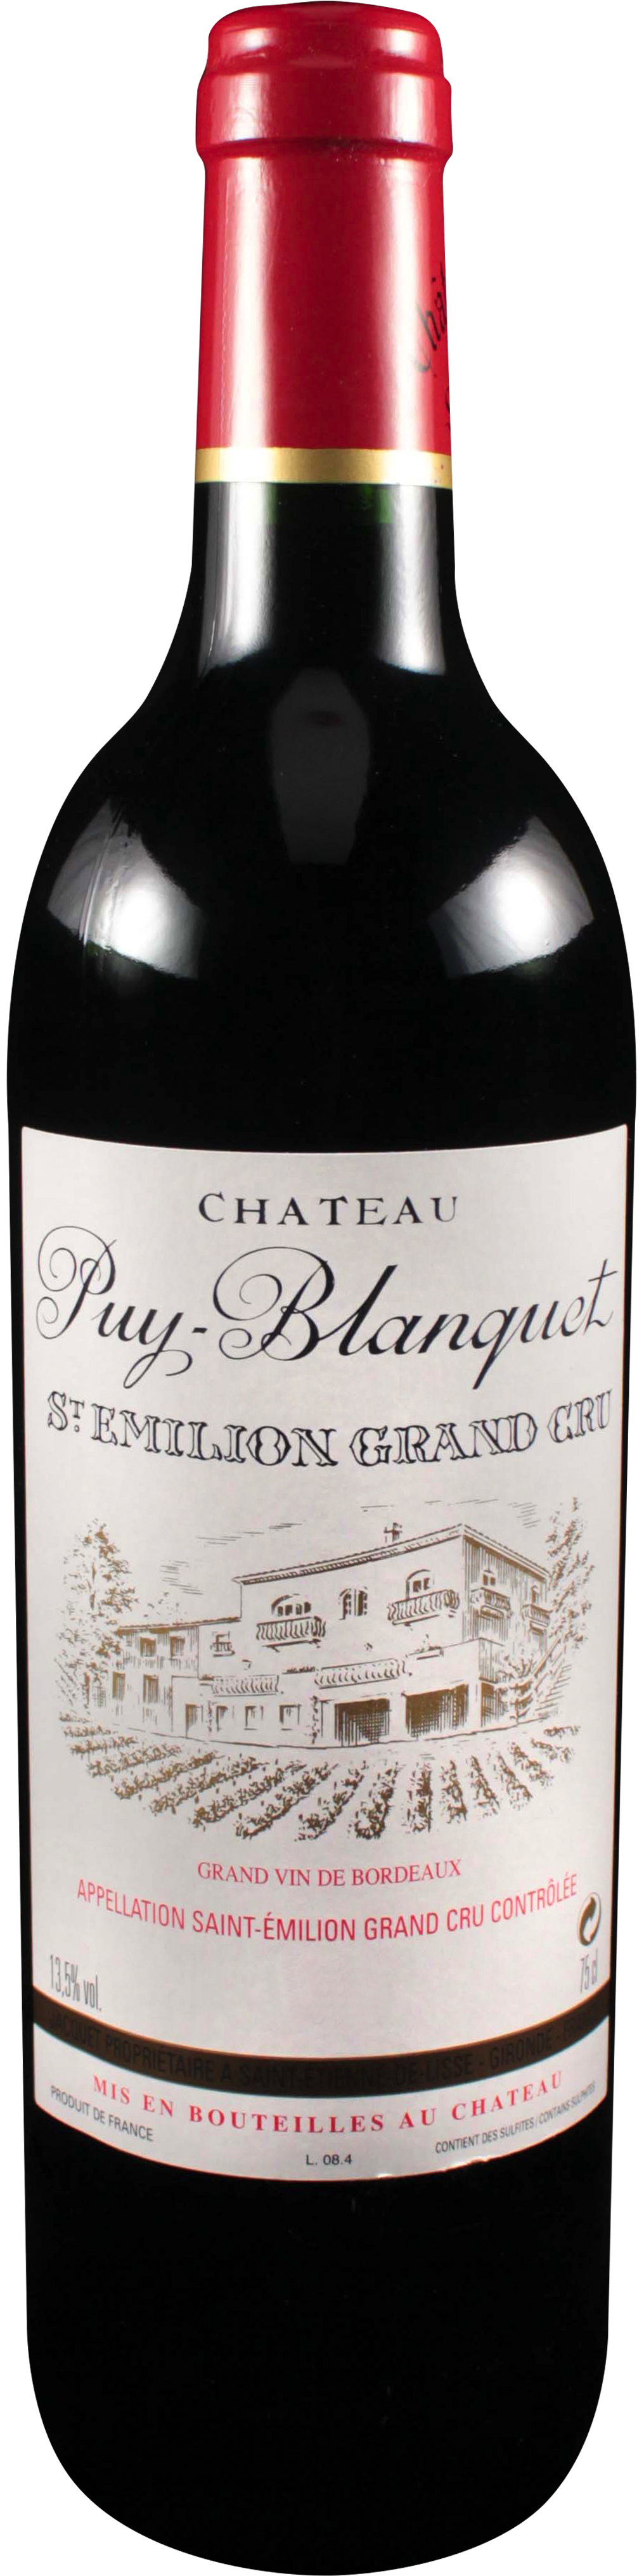 Image of product Château Puy Blanquet, St Emilion